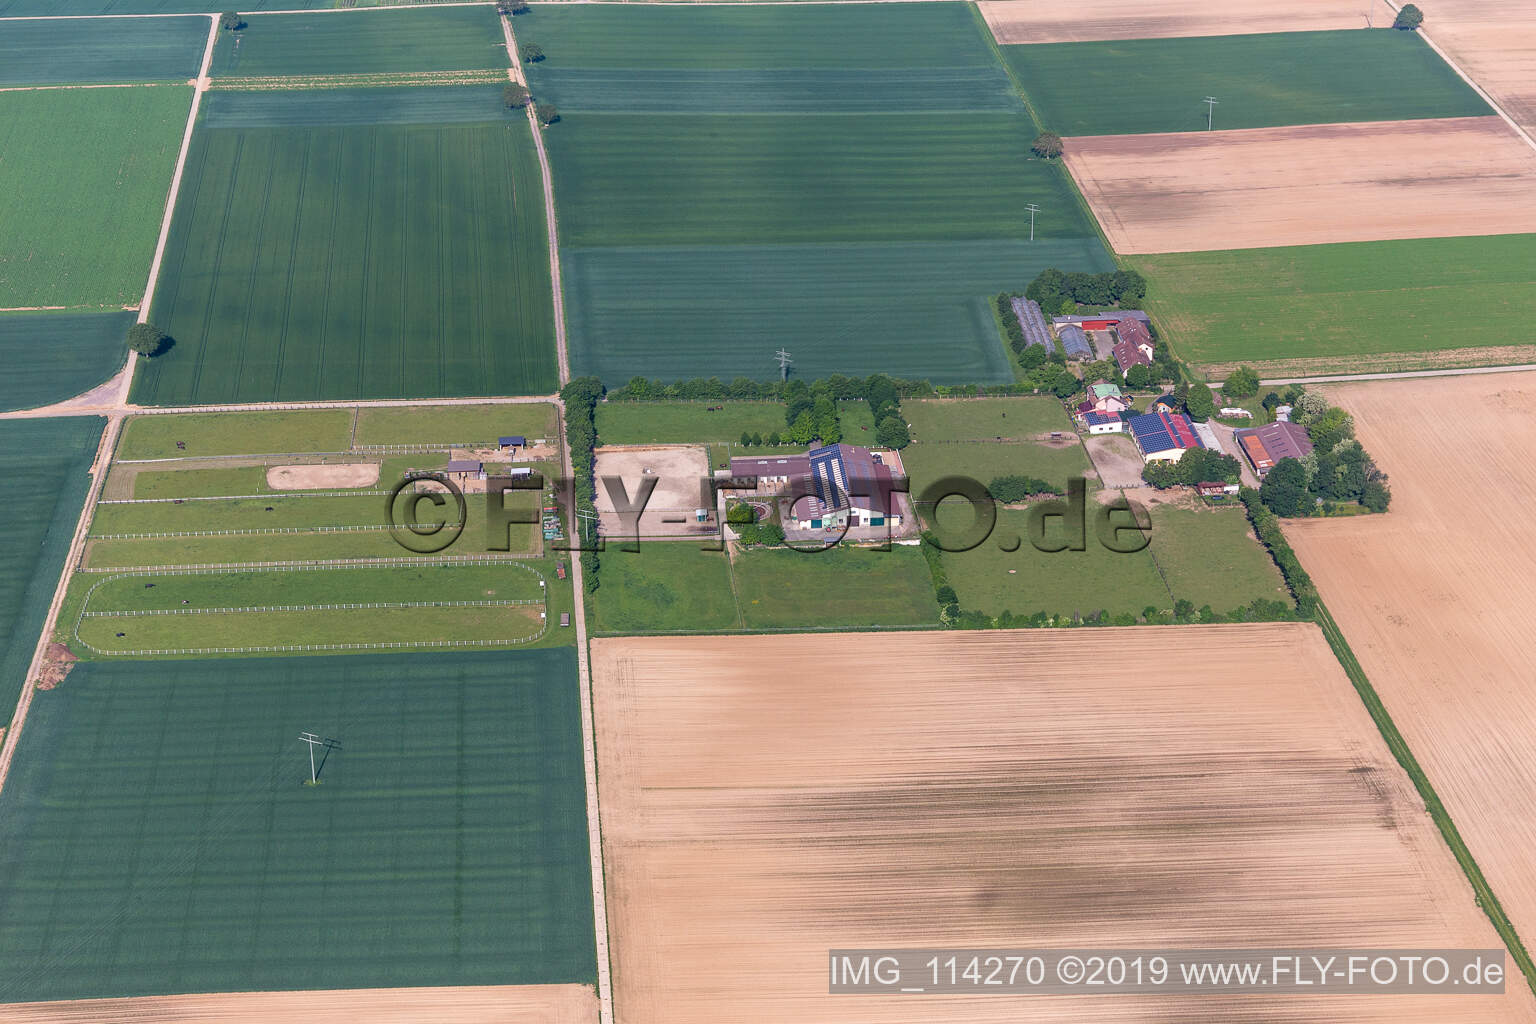 Ottersheim bei Landau im Bundesland Rheinland-Pfalz, Deutschland aus der Luft betrachtet